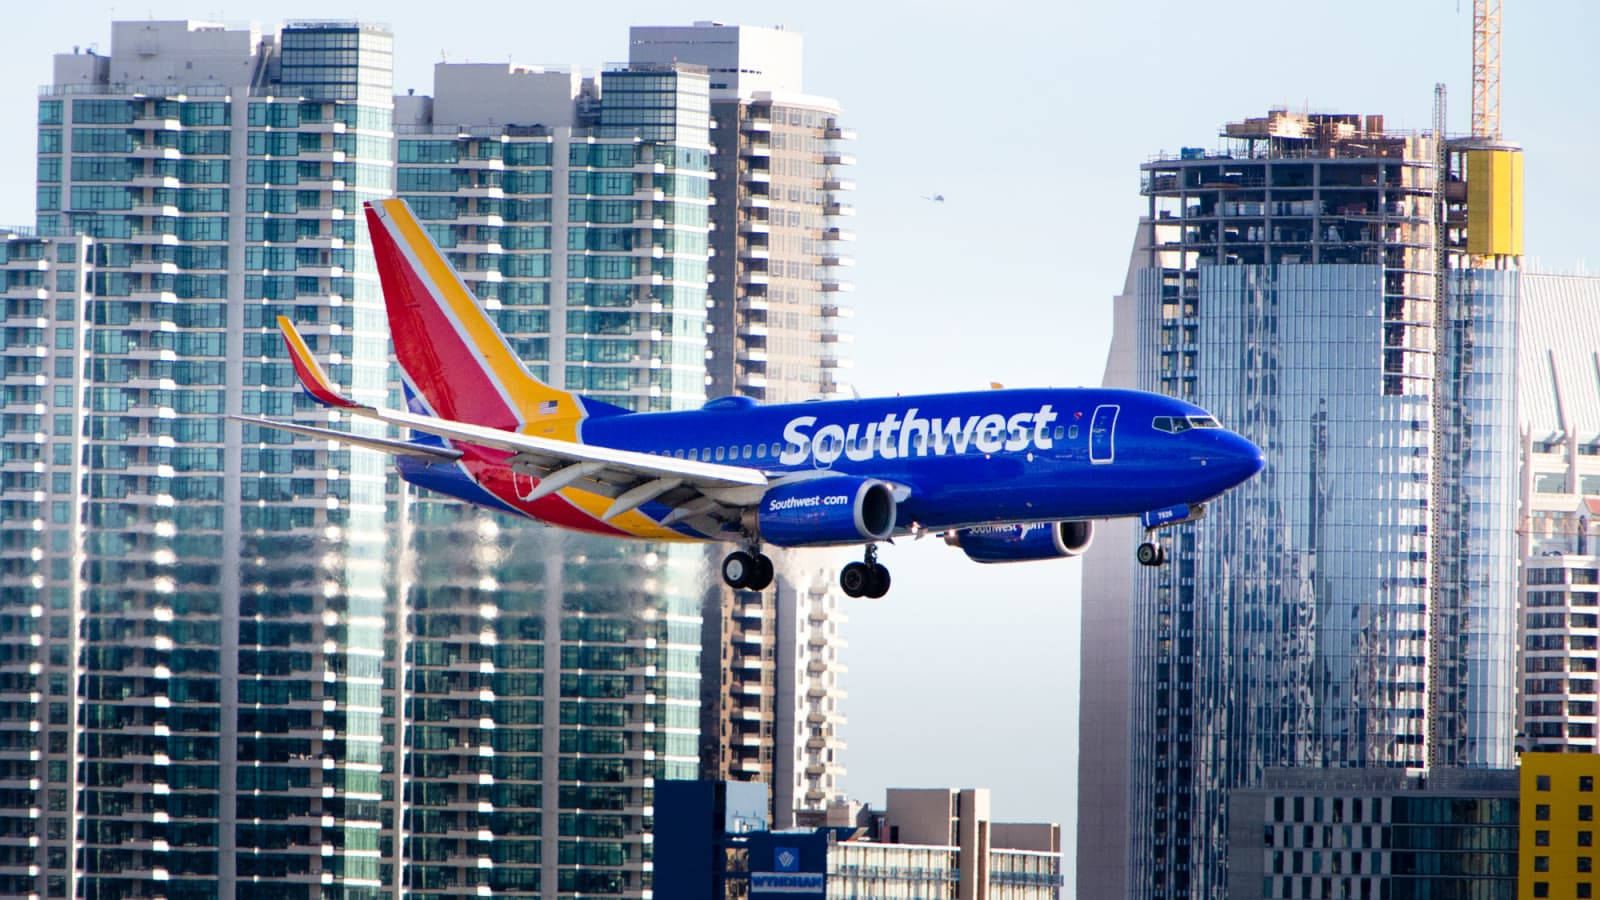 Aeronavesde Southwest Airlines En El Horizonte De La Ciudad Fondo de pantalla